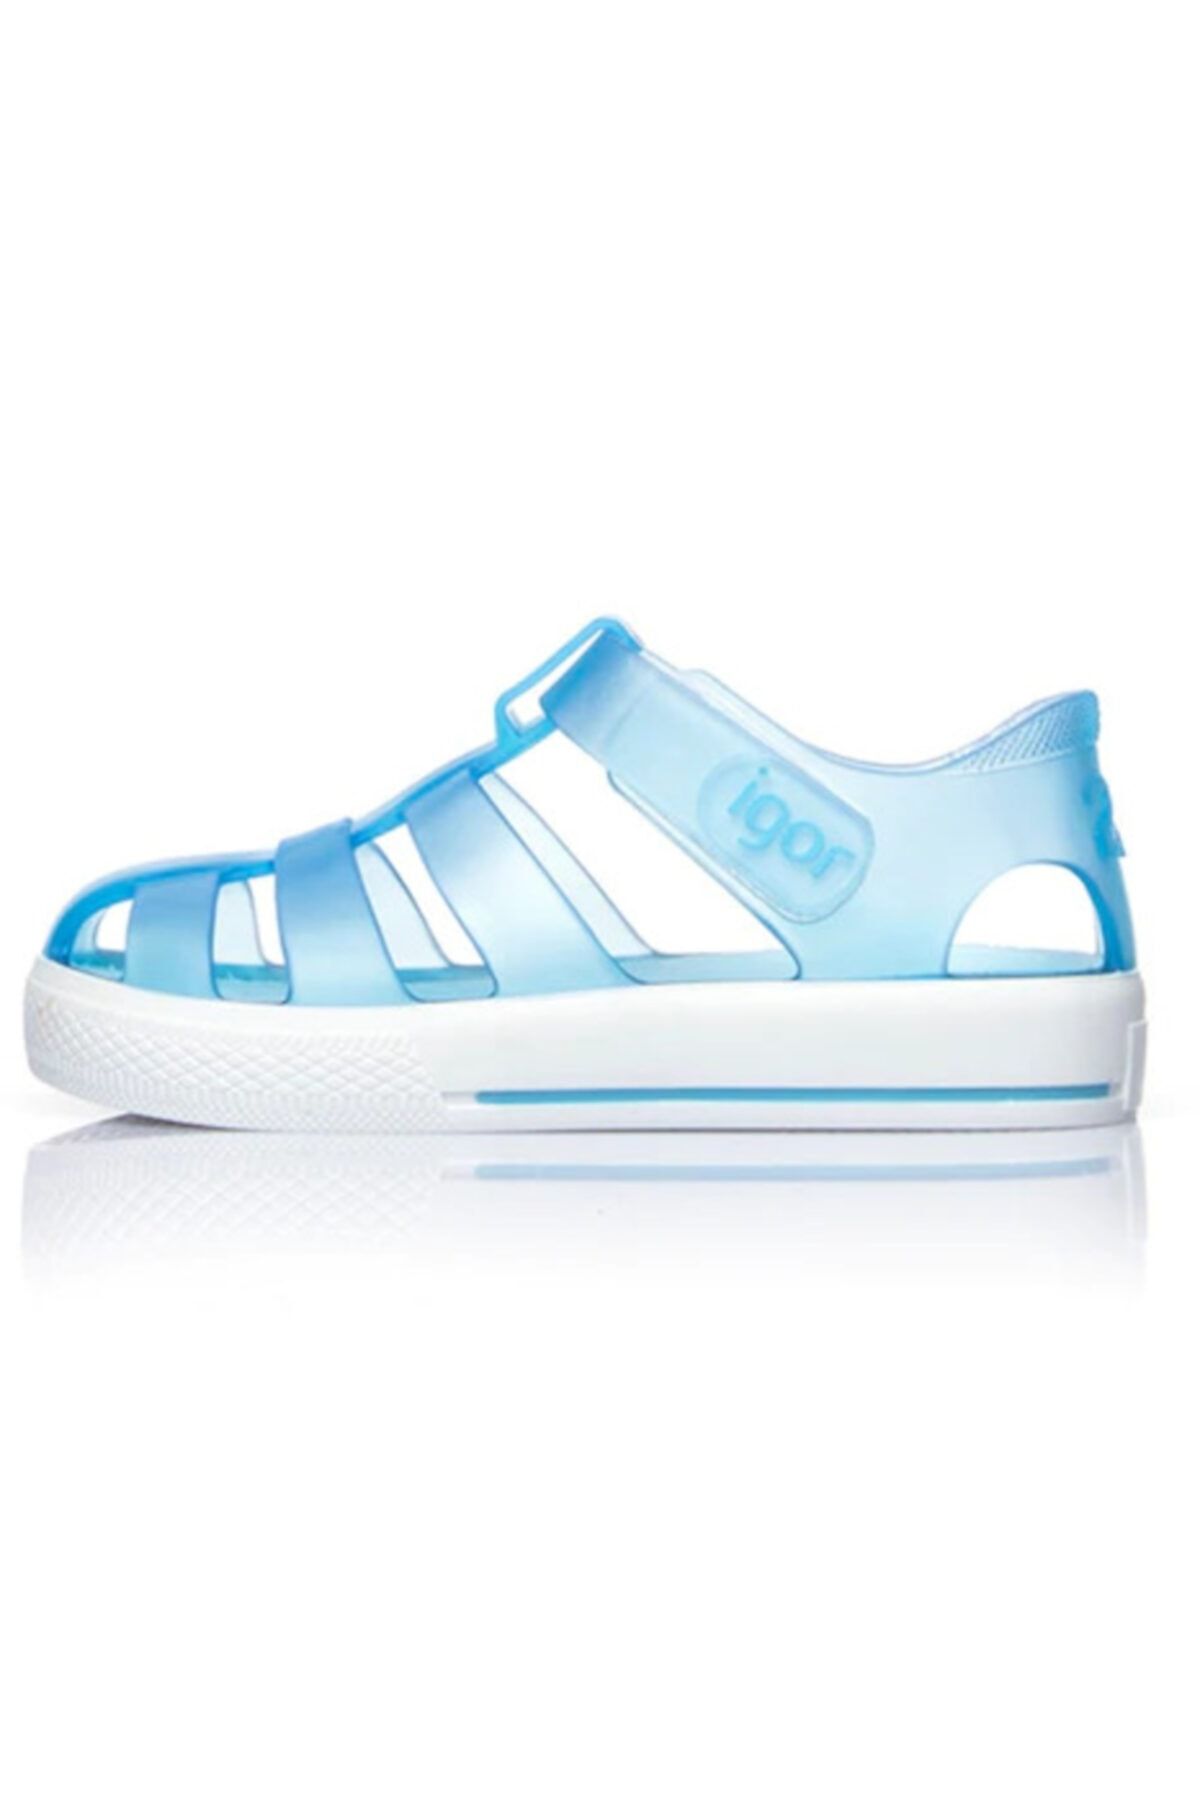 IGOR Çocuk Mavi Star Sandalet 20-28 S10171